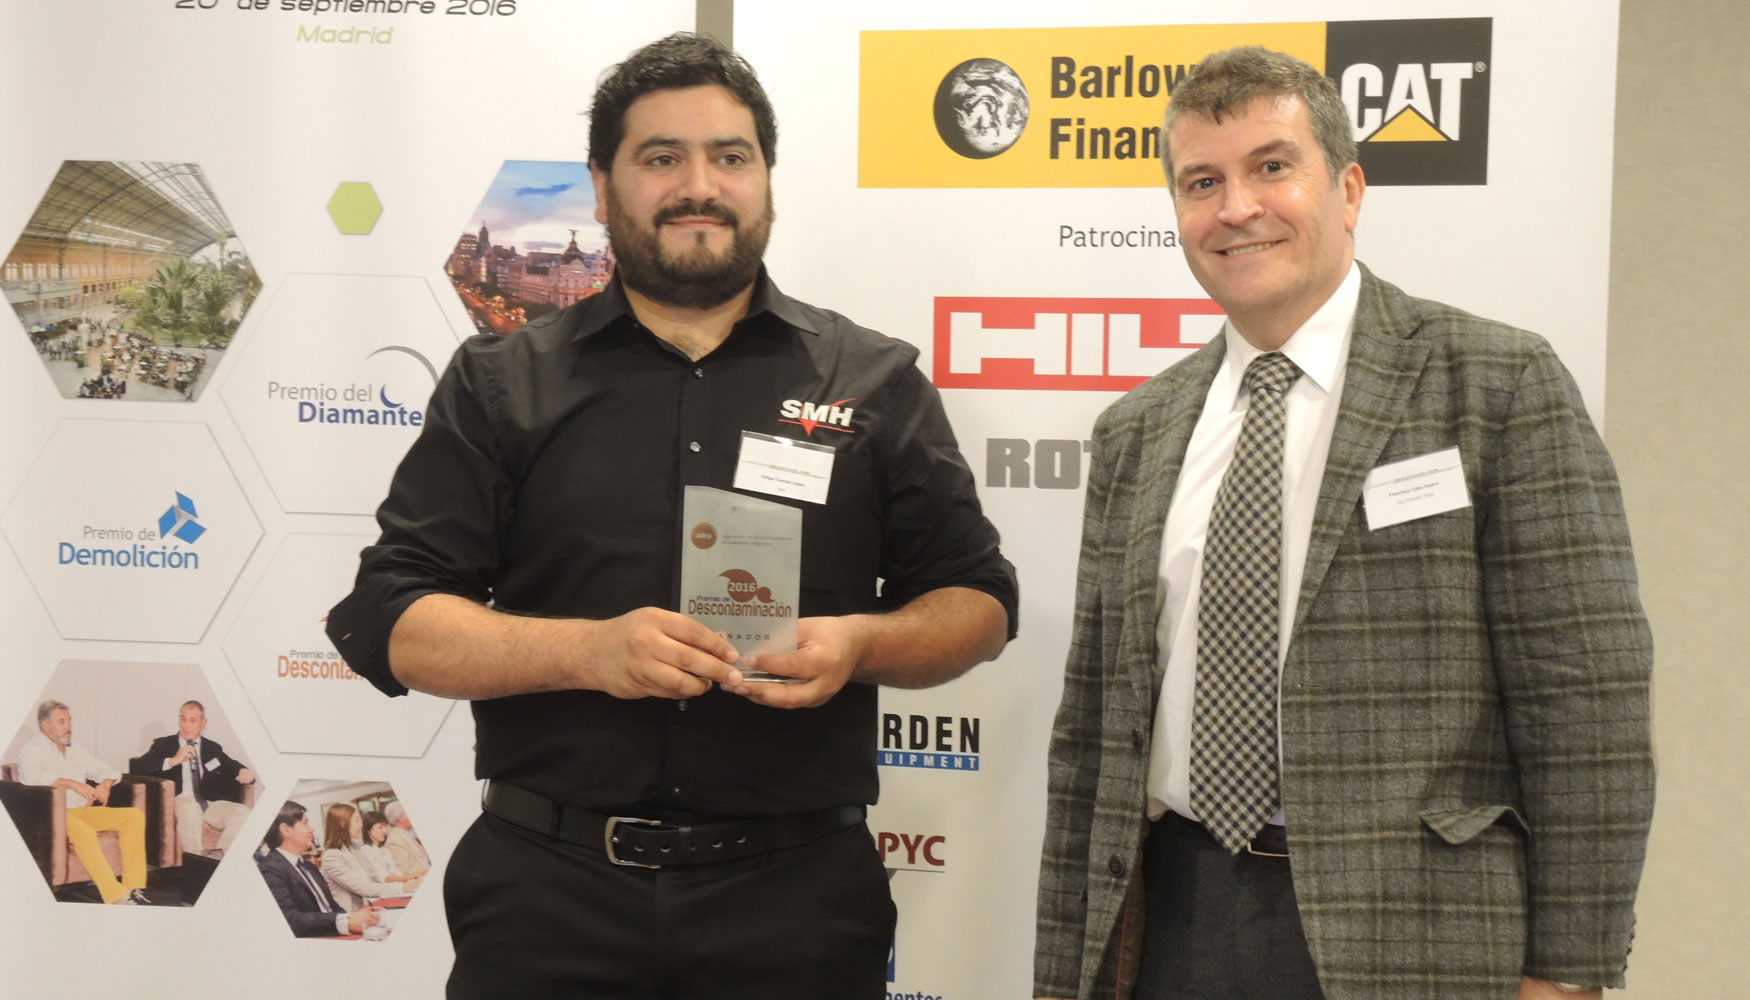 El trofeo de ganador al Premio de Descontaminacin al mejor producto o sistema fue recogido por Felipe Fuentes, de SMH Products Espaa...